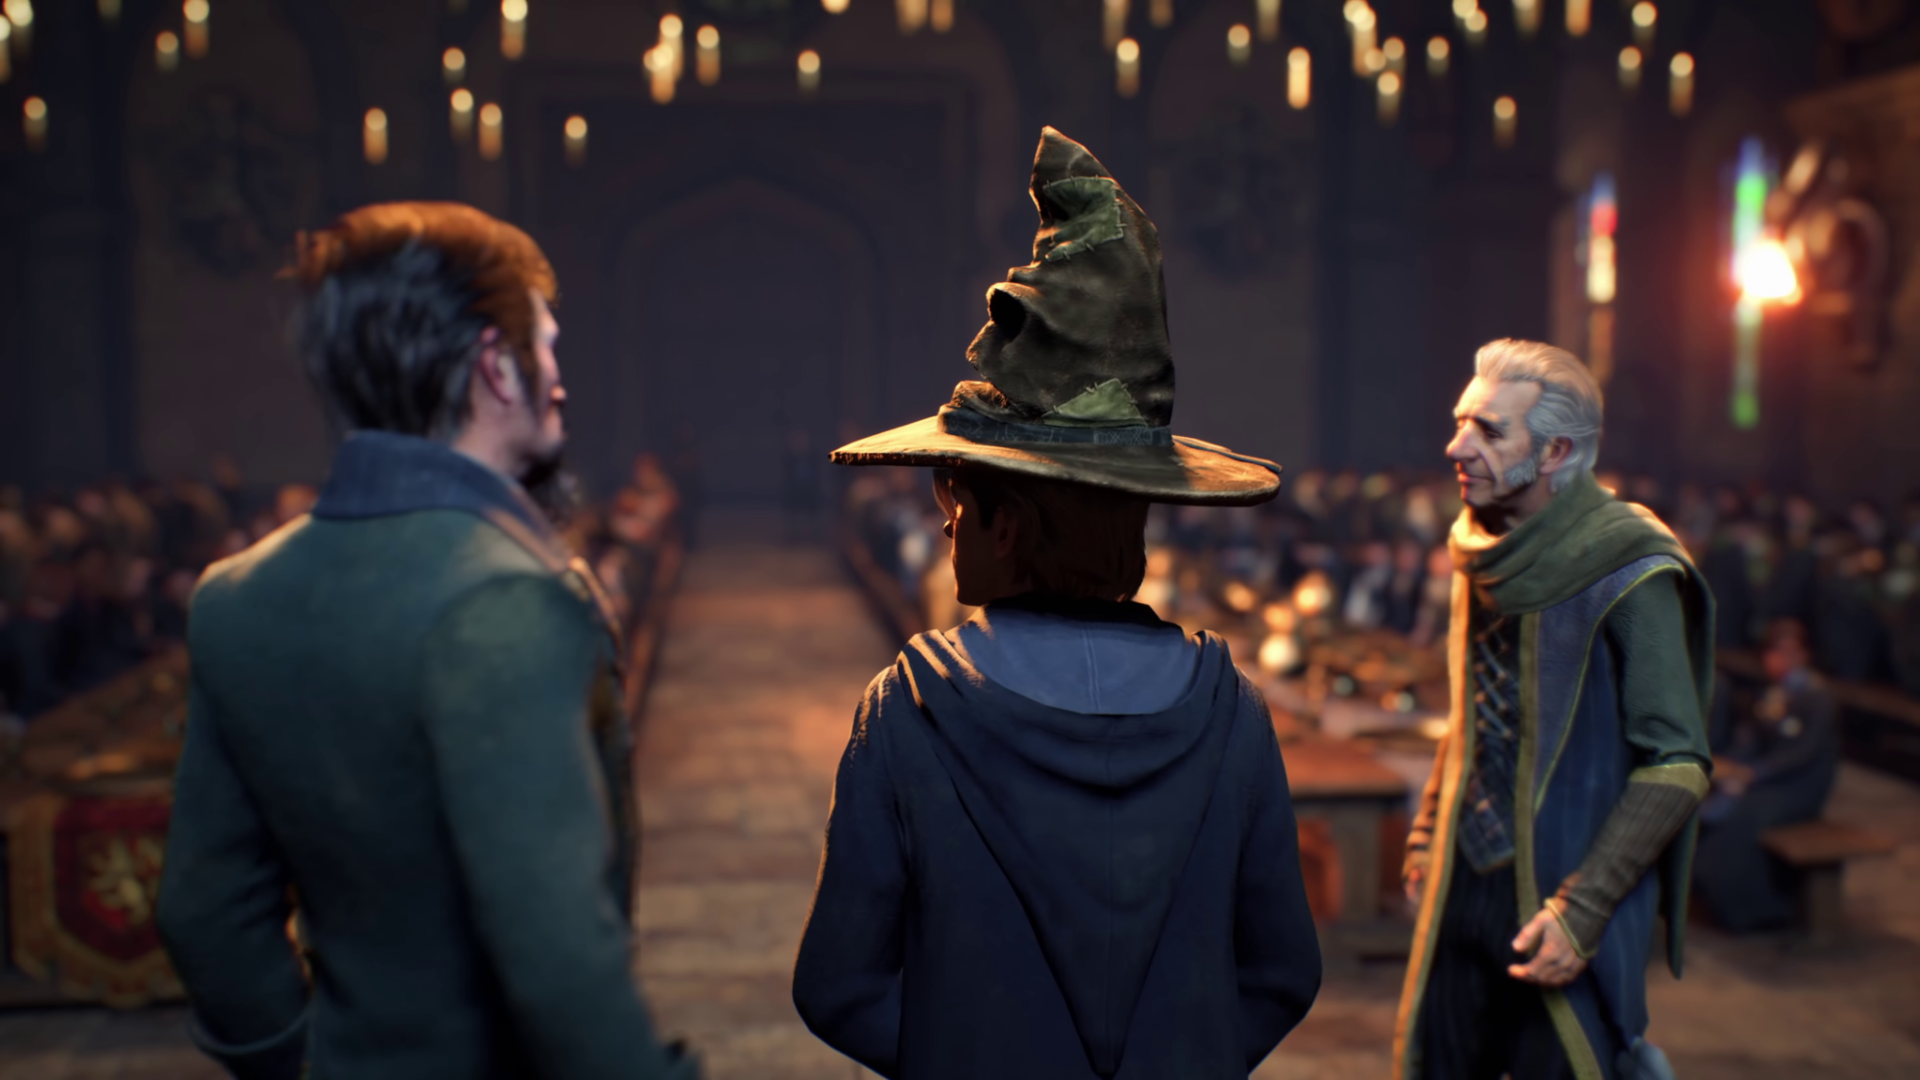 Hogwarts Legacy: compare o jogo com o filme de Harry Potter